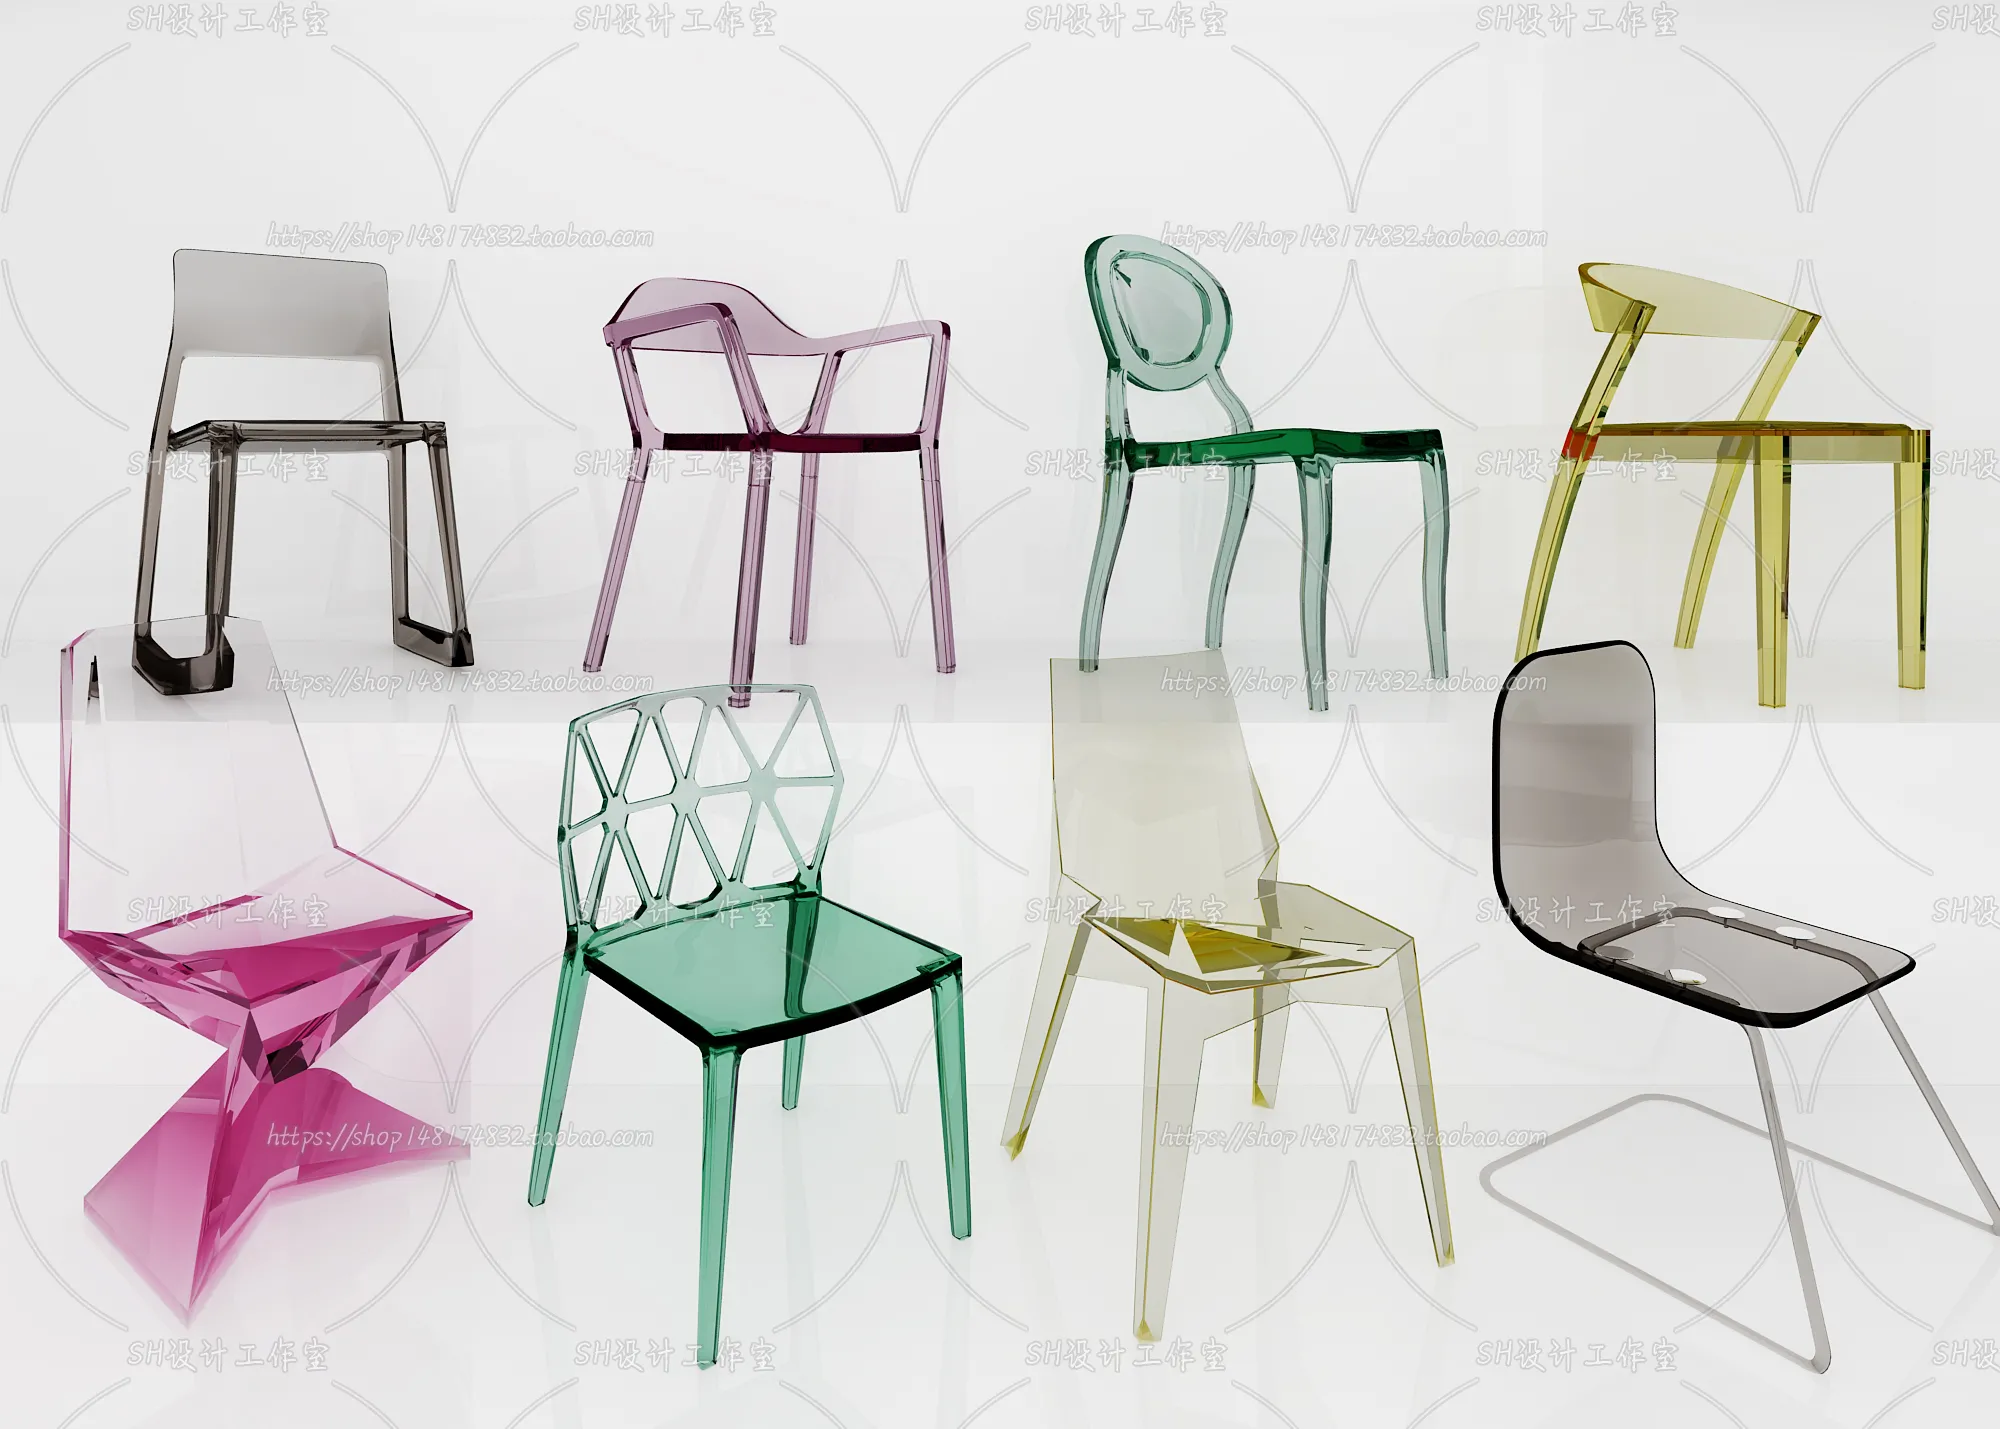 Chair – Single Chair 3D Models – 2010